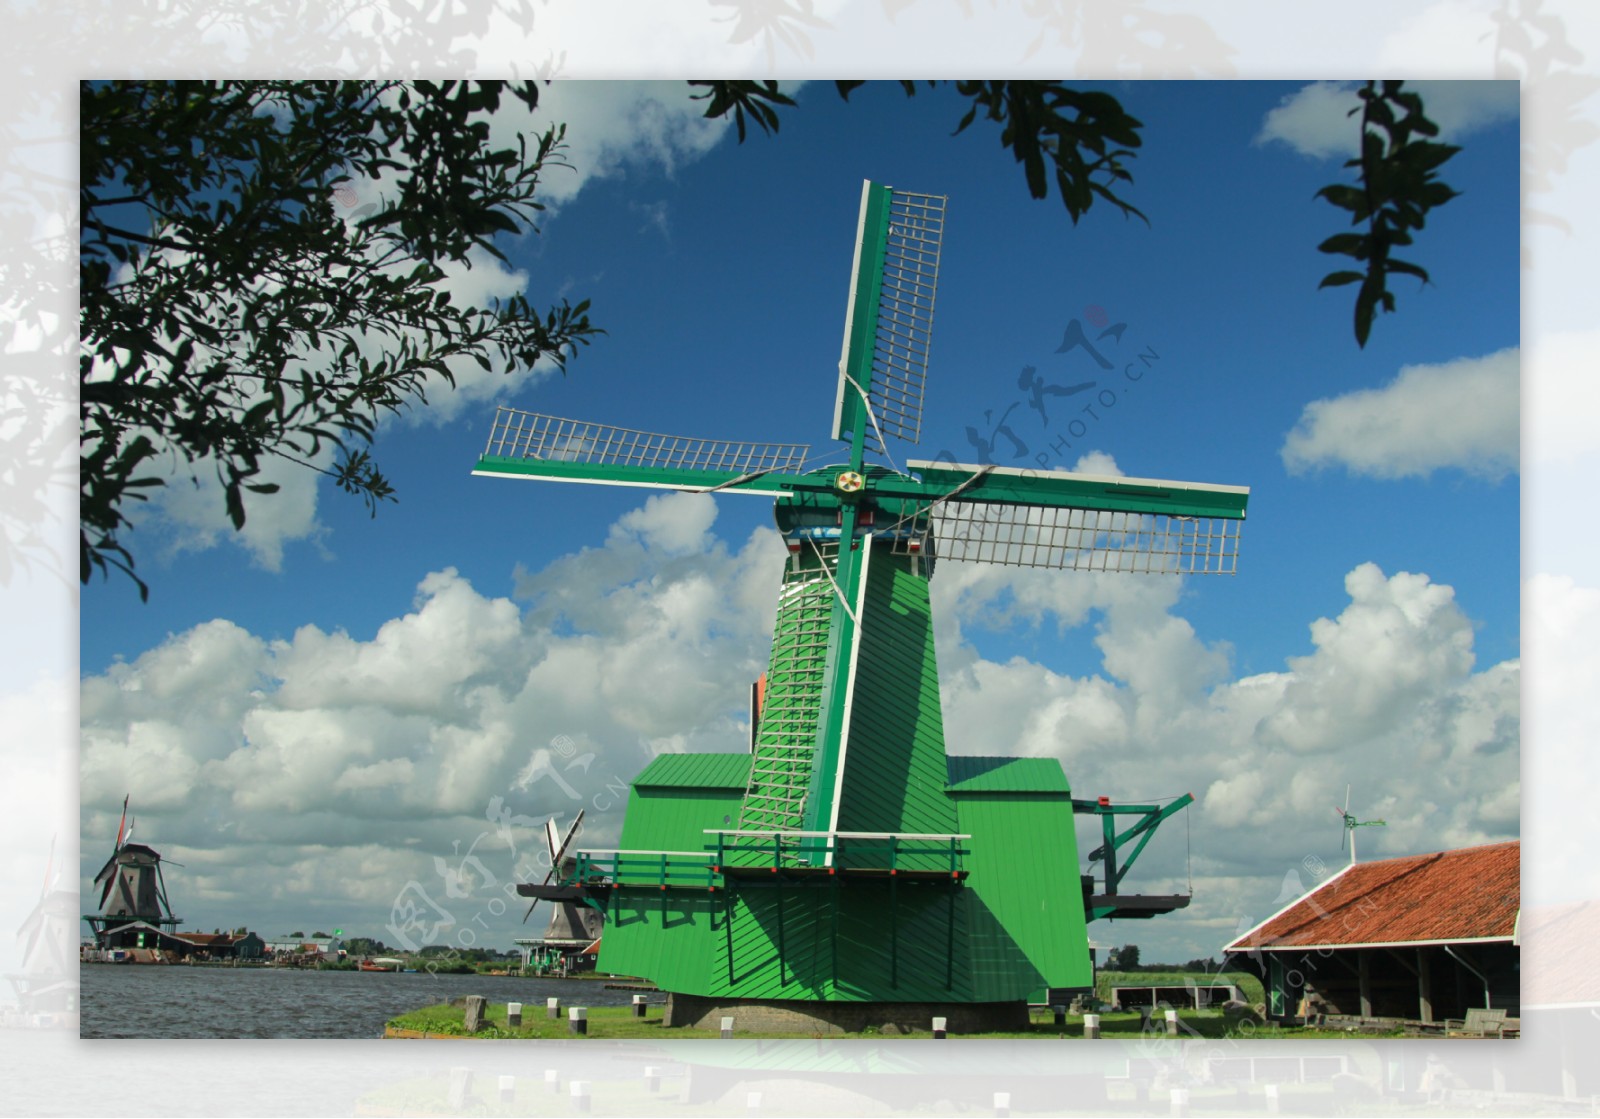 荷兰风车村桑斯安斯风景